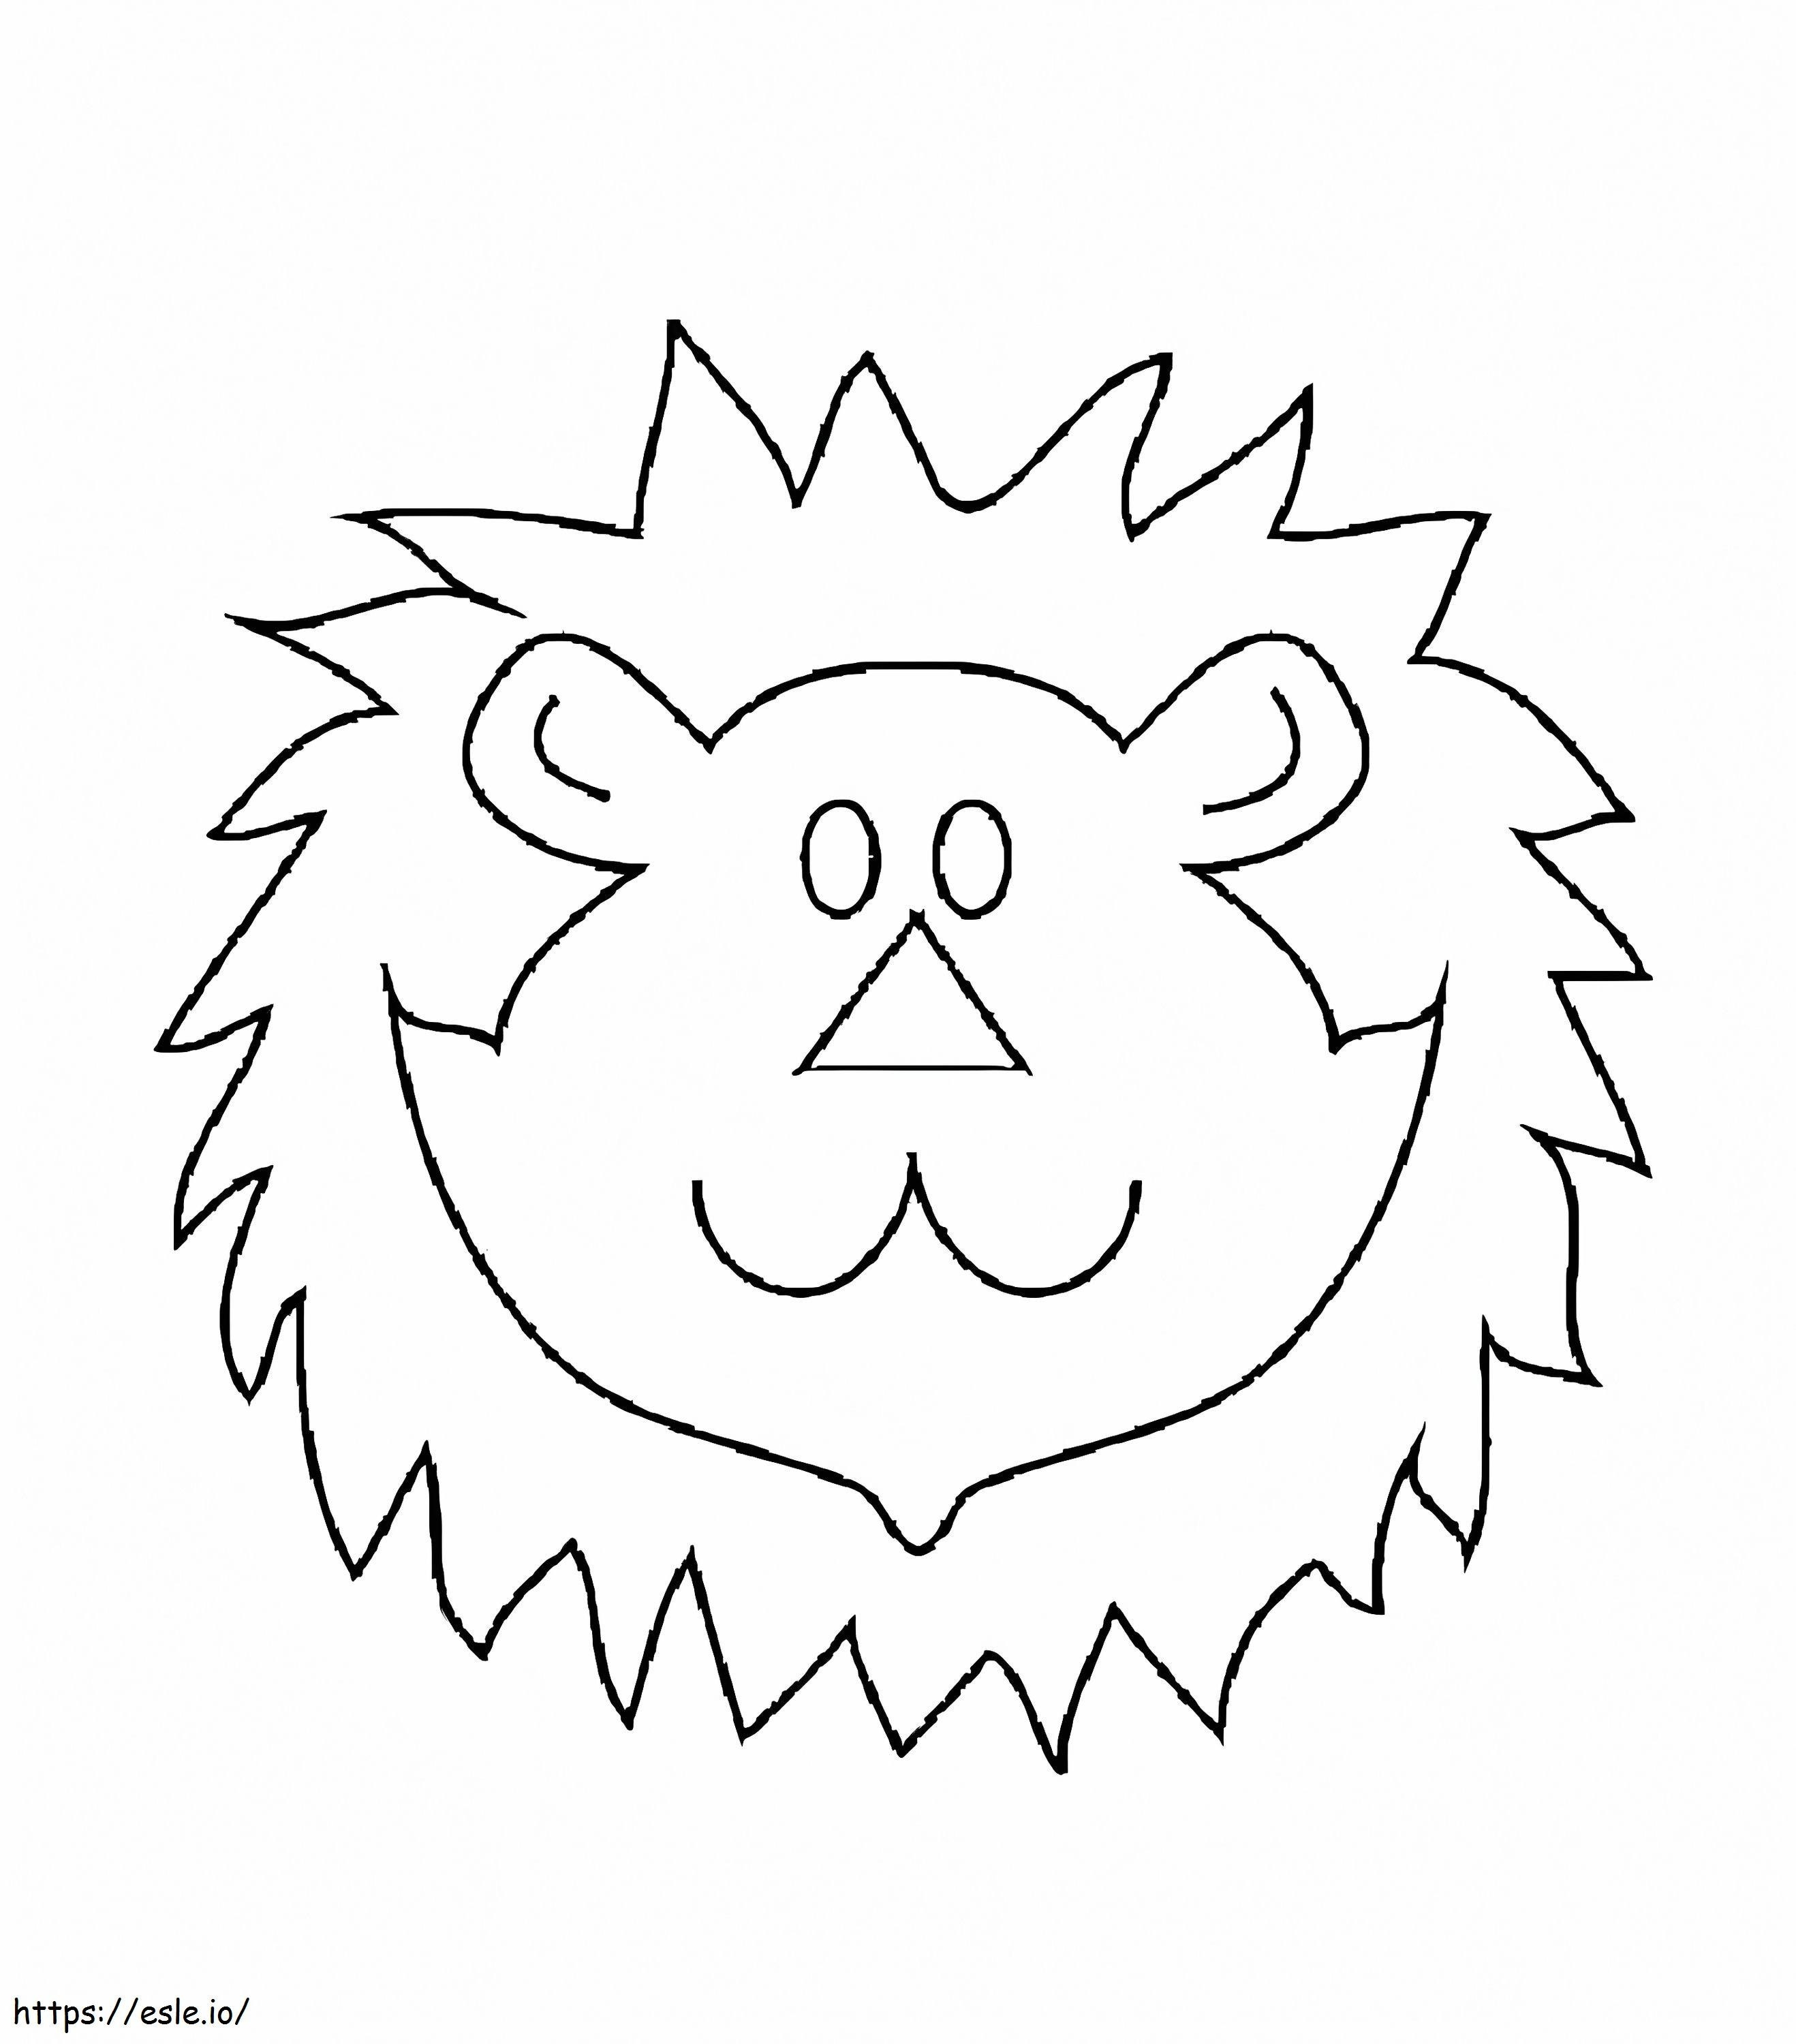 Față simplă de leu de colorat